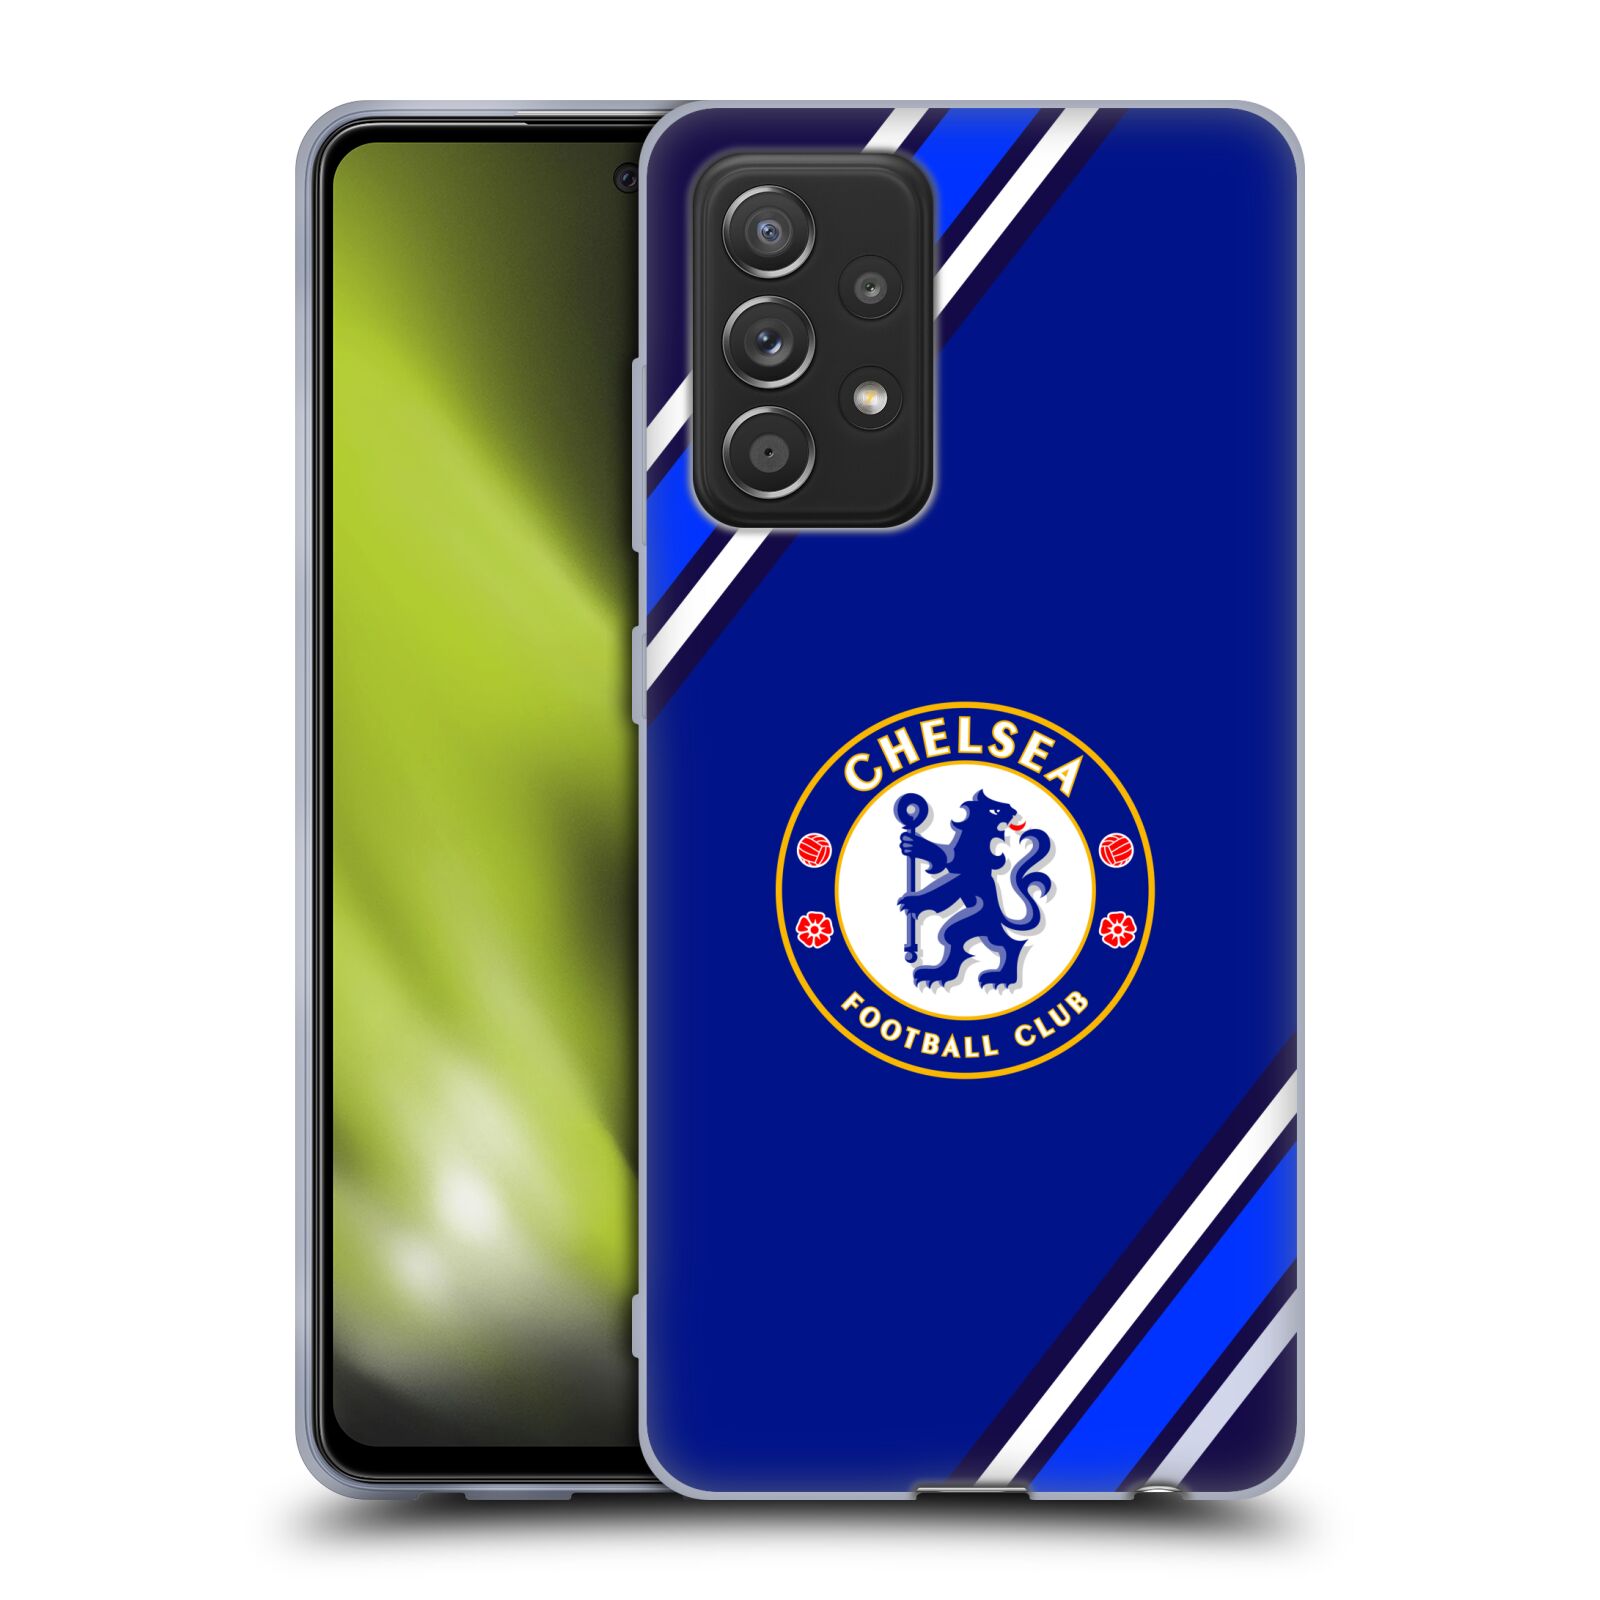 Silikonové pouzdro na mobil Samsung Galaxy A52 / A52 5G / A52s 5G - Chelsea Football Club Crest Stripes (Silikonový kryt, obal, pouzdro na mobilní telefon Samsung Galaxy A52 (SM-A525F) / Samsung Galaxy A52 5G (SM-A526F) / Samsung Galaxy A52s 5G (SM-A528F)